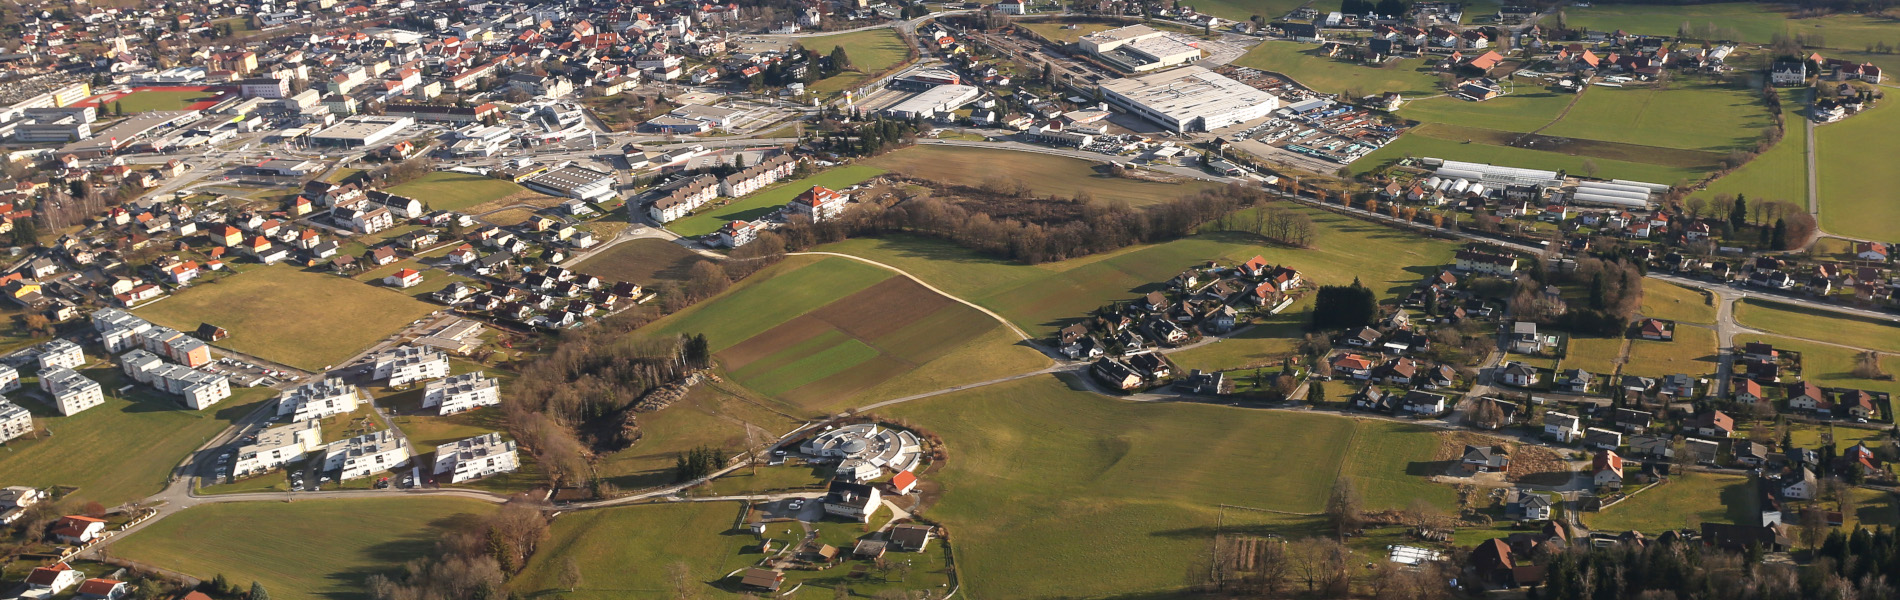 Zersiedelung Feldkirchen in Kärnten, Foto: Wikipedia / joadl / Cc-by-sa-3.0-at